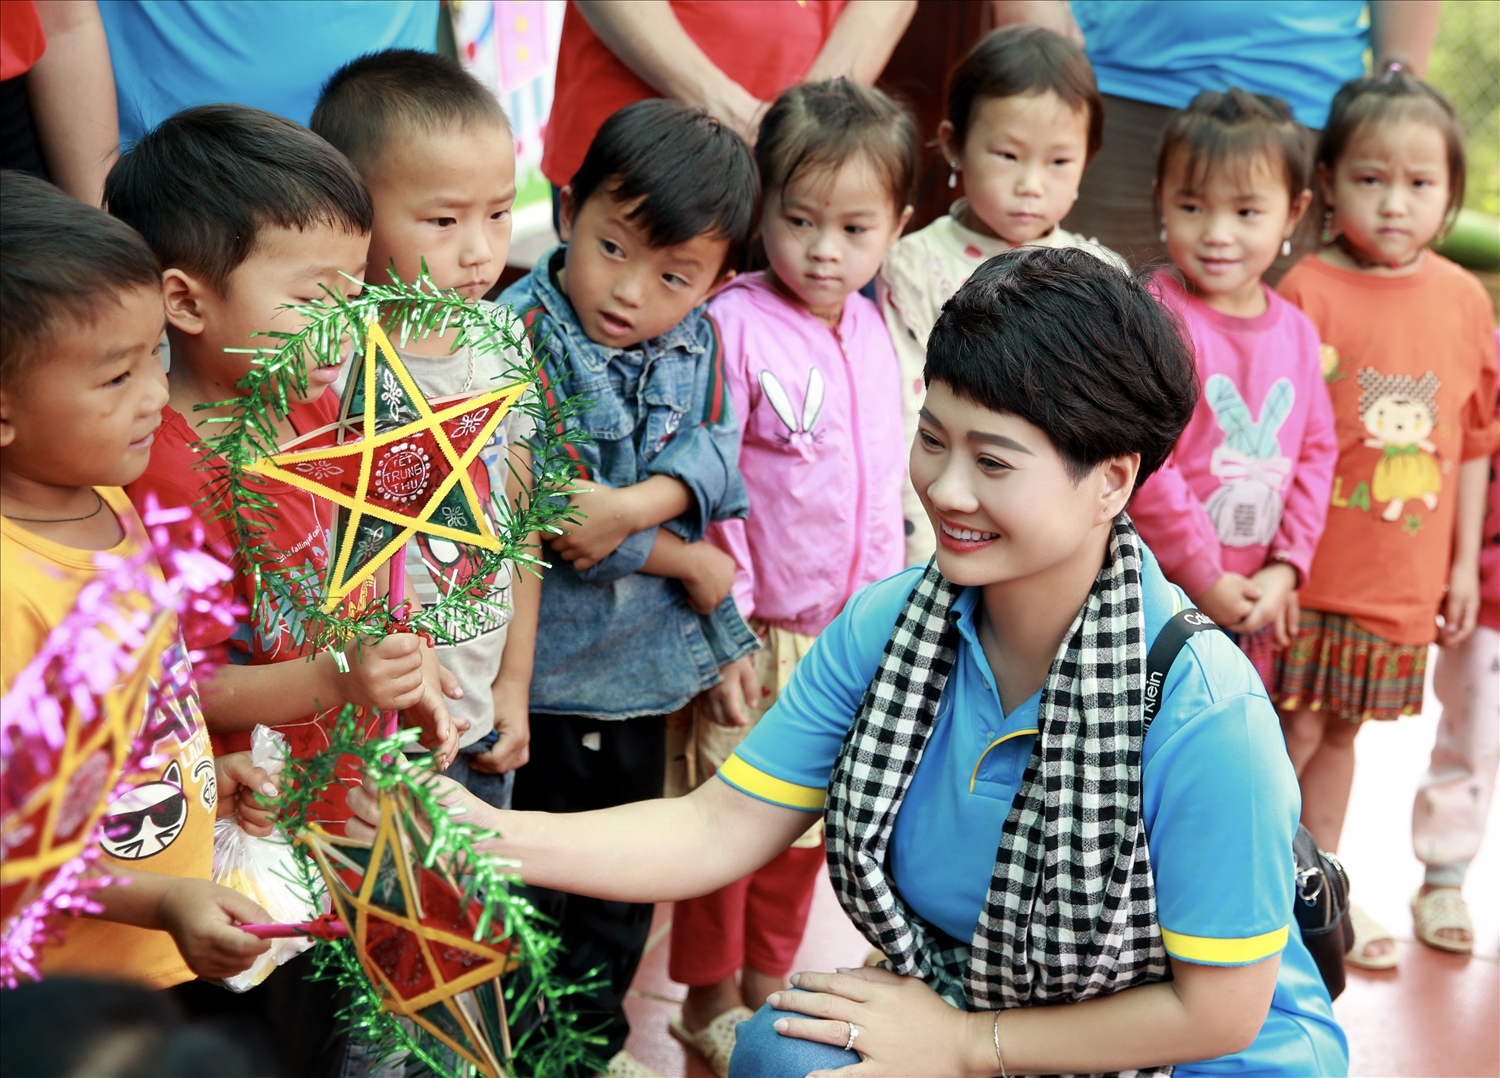 Theo bà Nguyễn Hồng Vân, Giám đốc công ty TNHH Tổng hợp Nguyên Khôi: "Đây là hoạt động thường niên của công ty tại các điểm trường còn khó khăn vùng DTTS, thông qua những chuyến thực tế này góp phần chia sẻ những khó khăn của thầy cô giáo cũng như các em học sinh vùng cao